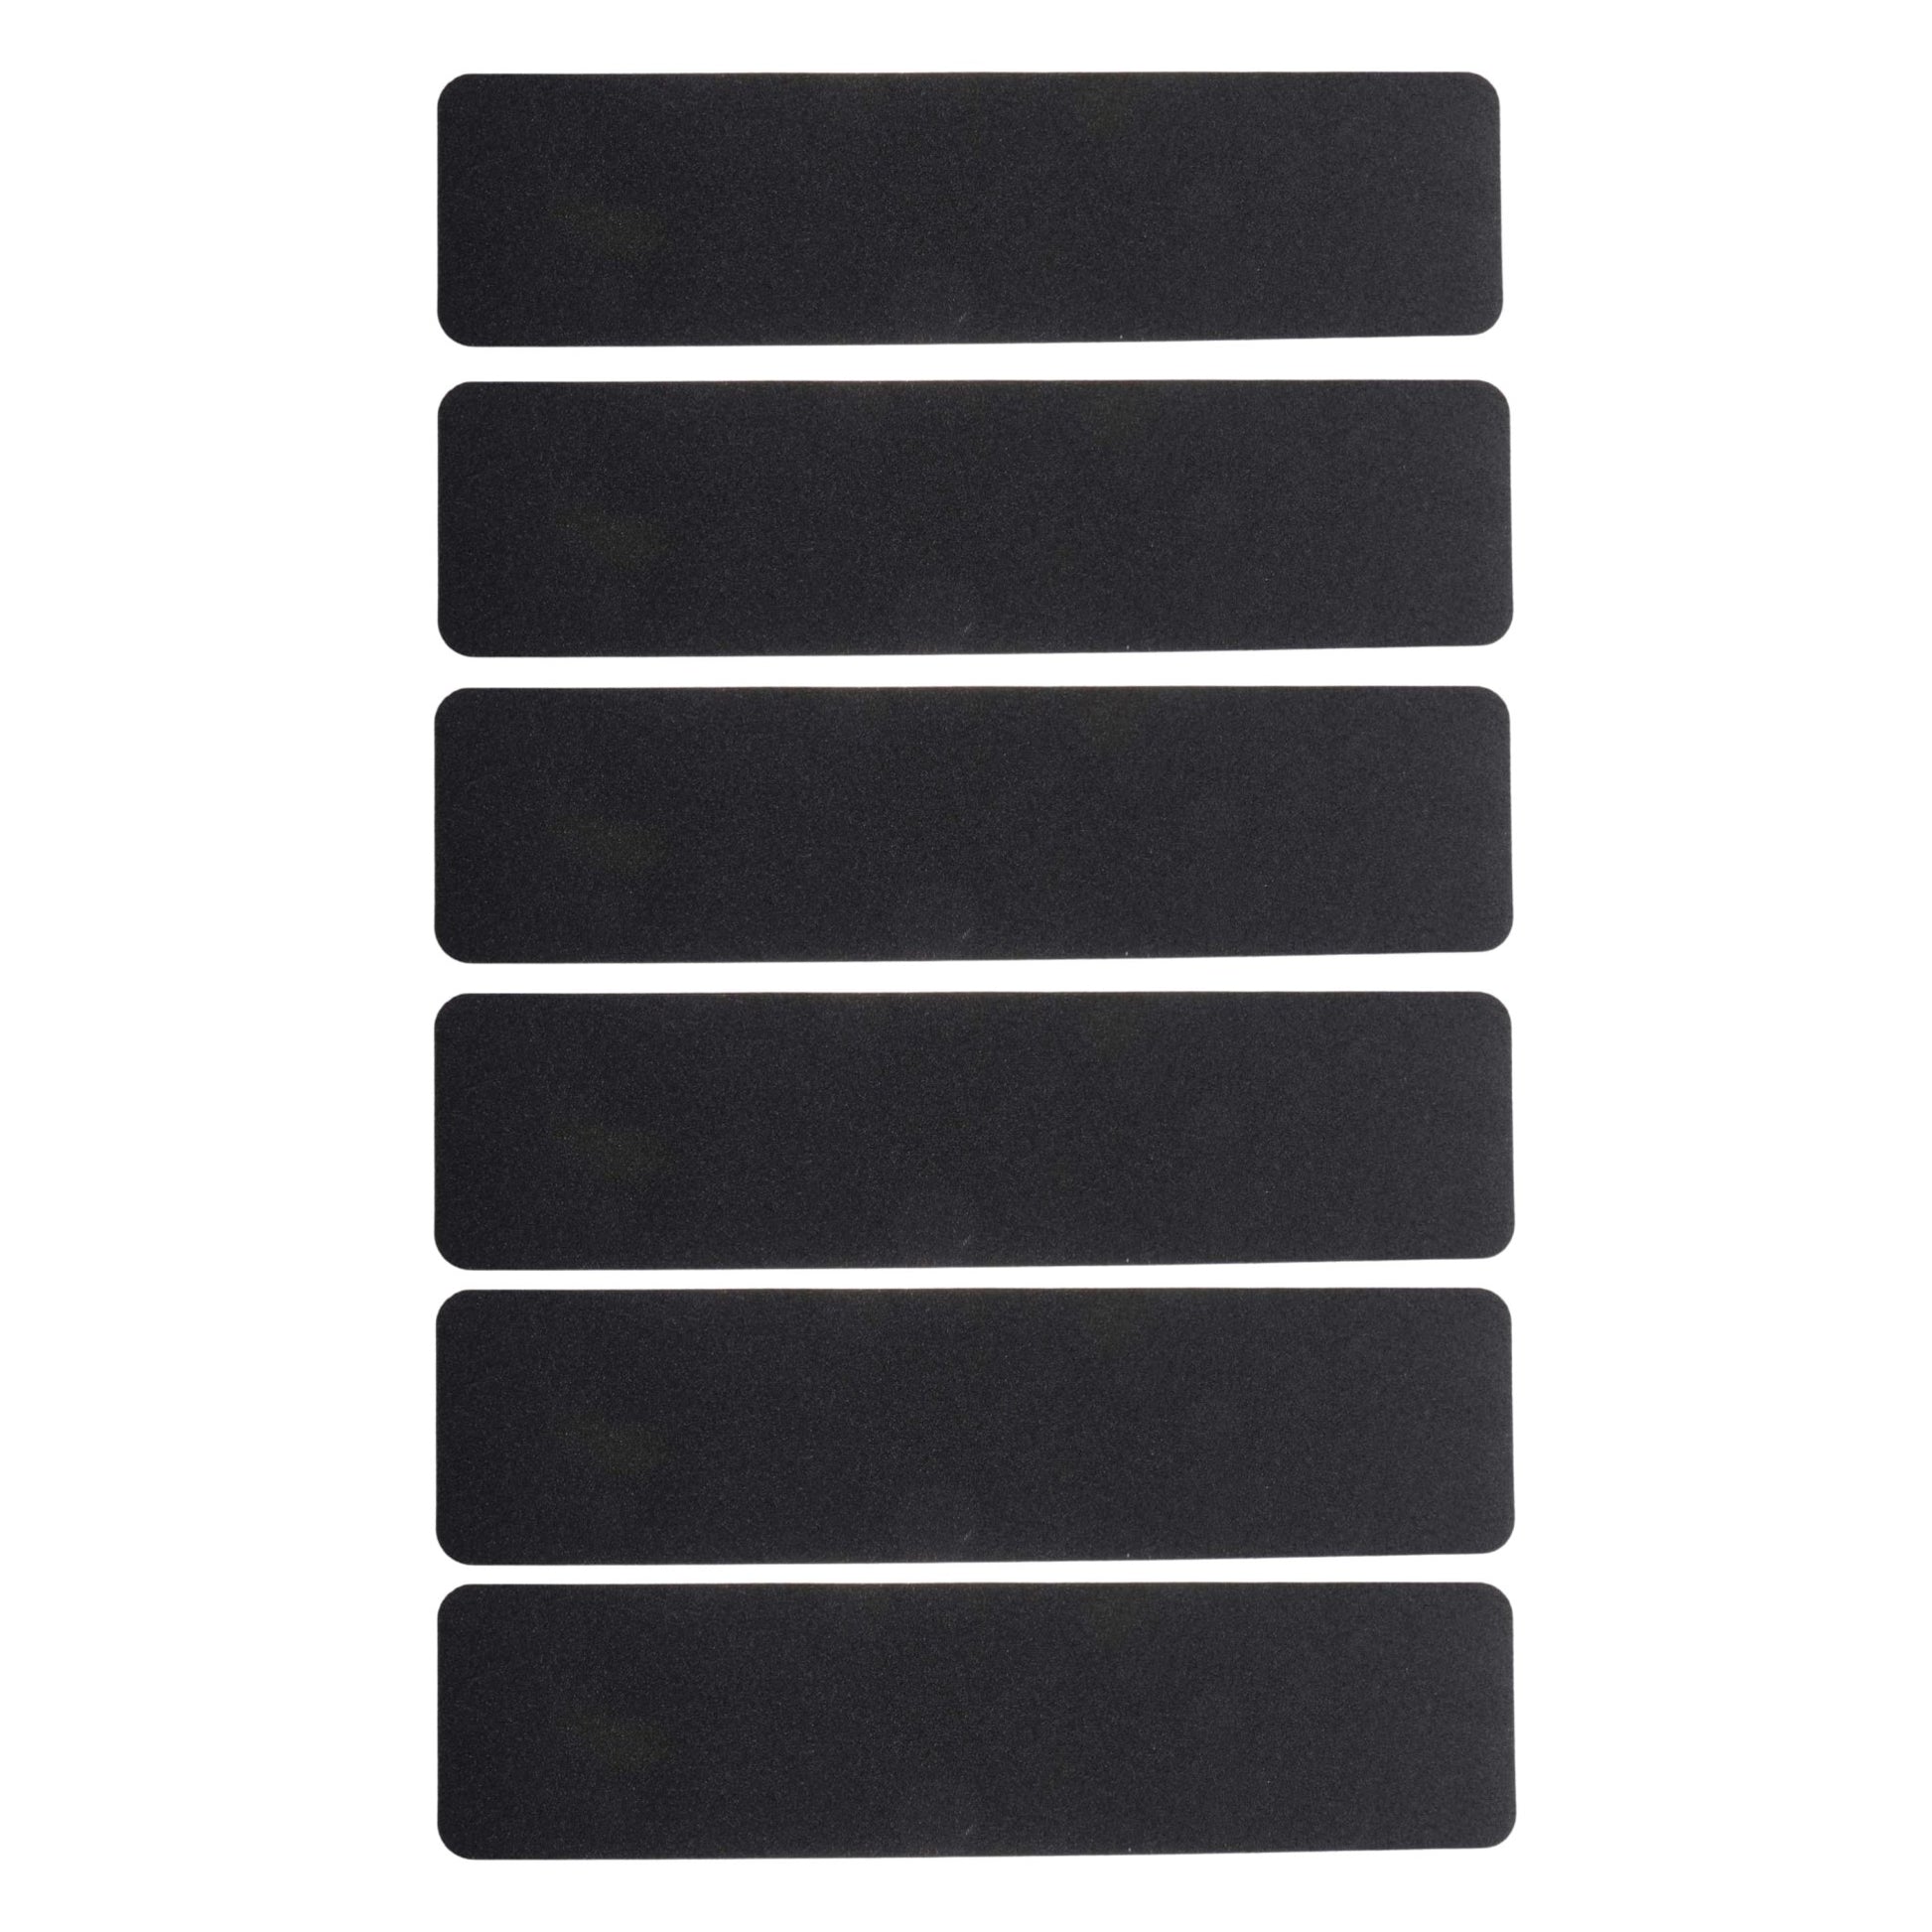 Self Adhesive Anti Slip/Anti Skid Strip (Pack Of 6) ADHESIVE TAPES- #Royalkart#Adhesive Strips